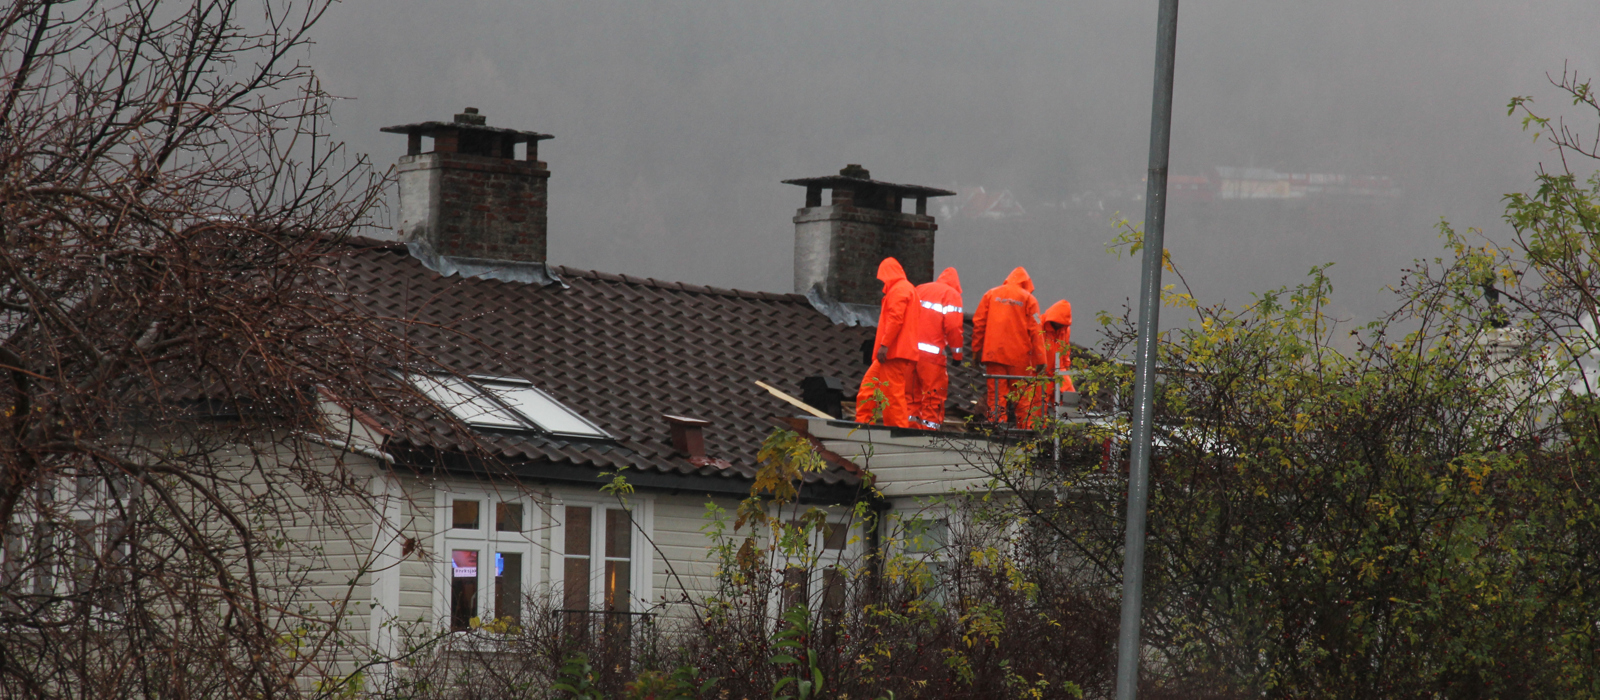 Jobb på taket i kraftig regnvær, Nordnes Bergen. Foto: Christel Wigen Grøndahl, Bygg og Bevar